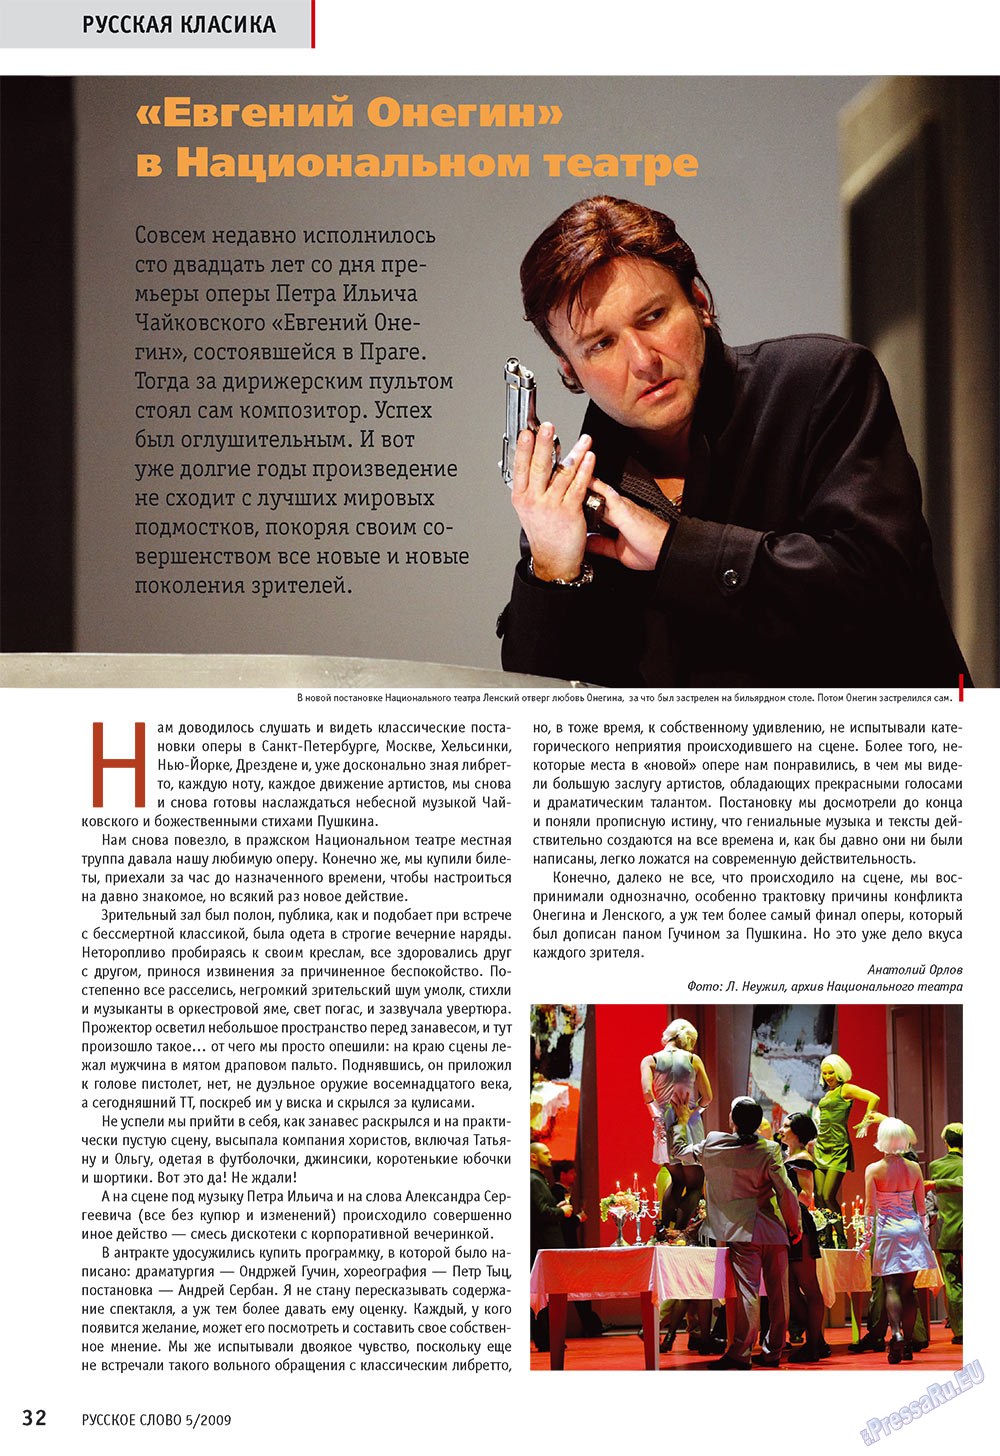 Русское слово, журнал. 2009 №5 стр.34